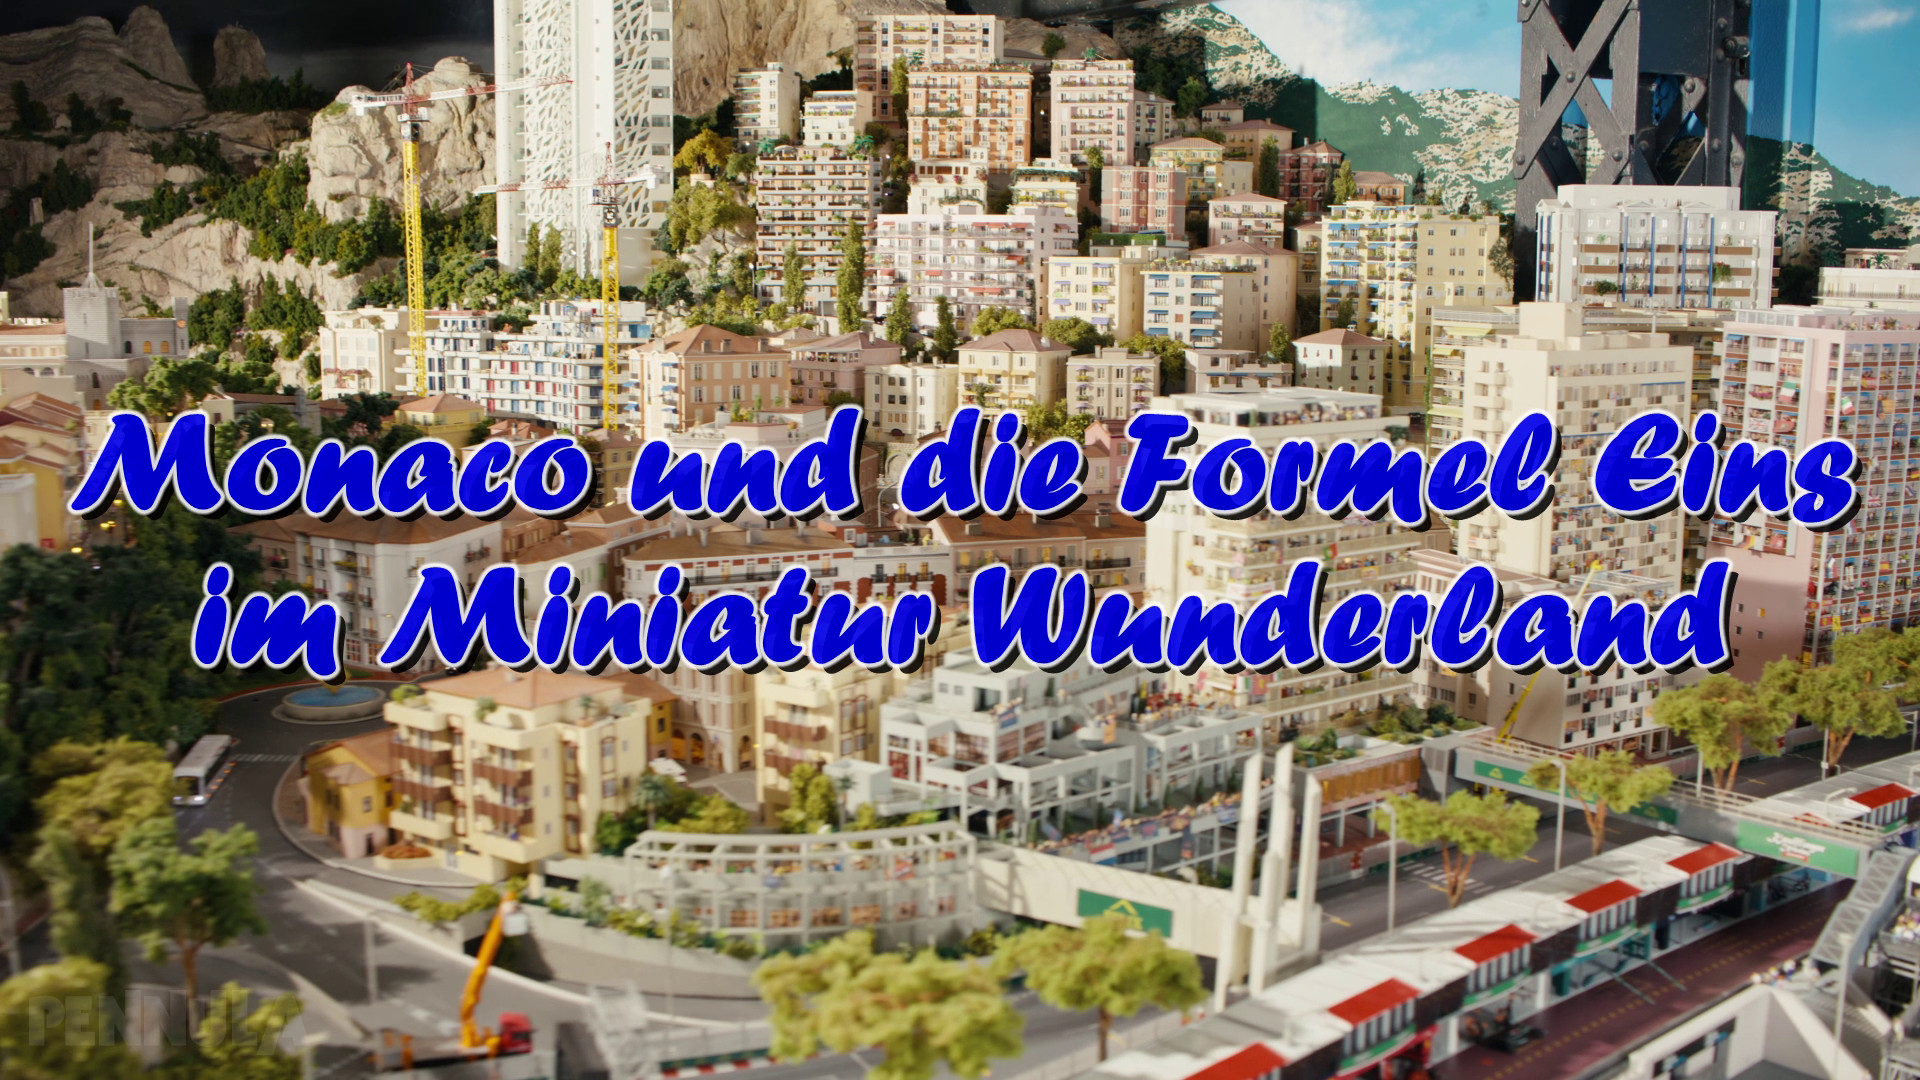 Monaco und die Formel Eins im Miniatur Wunderland